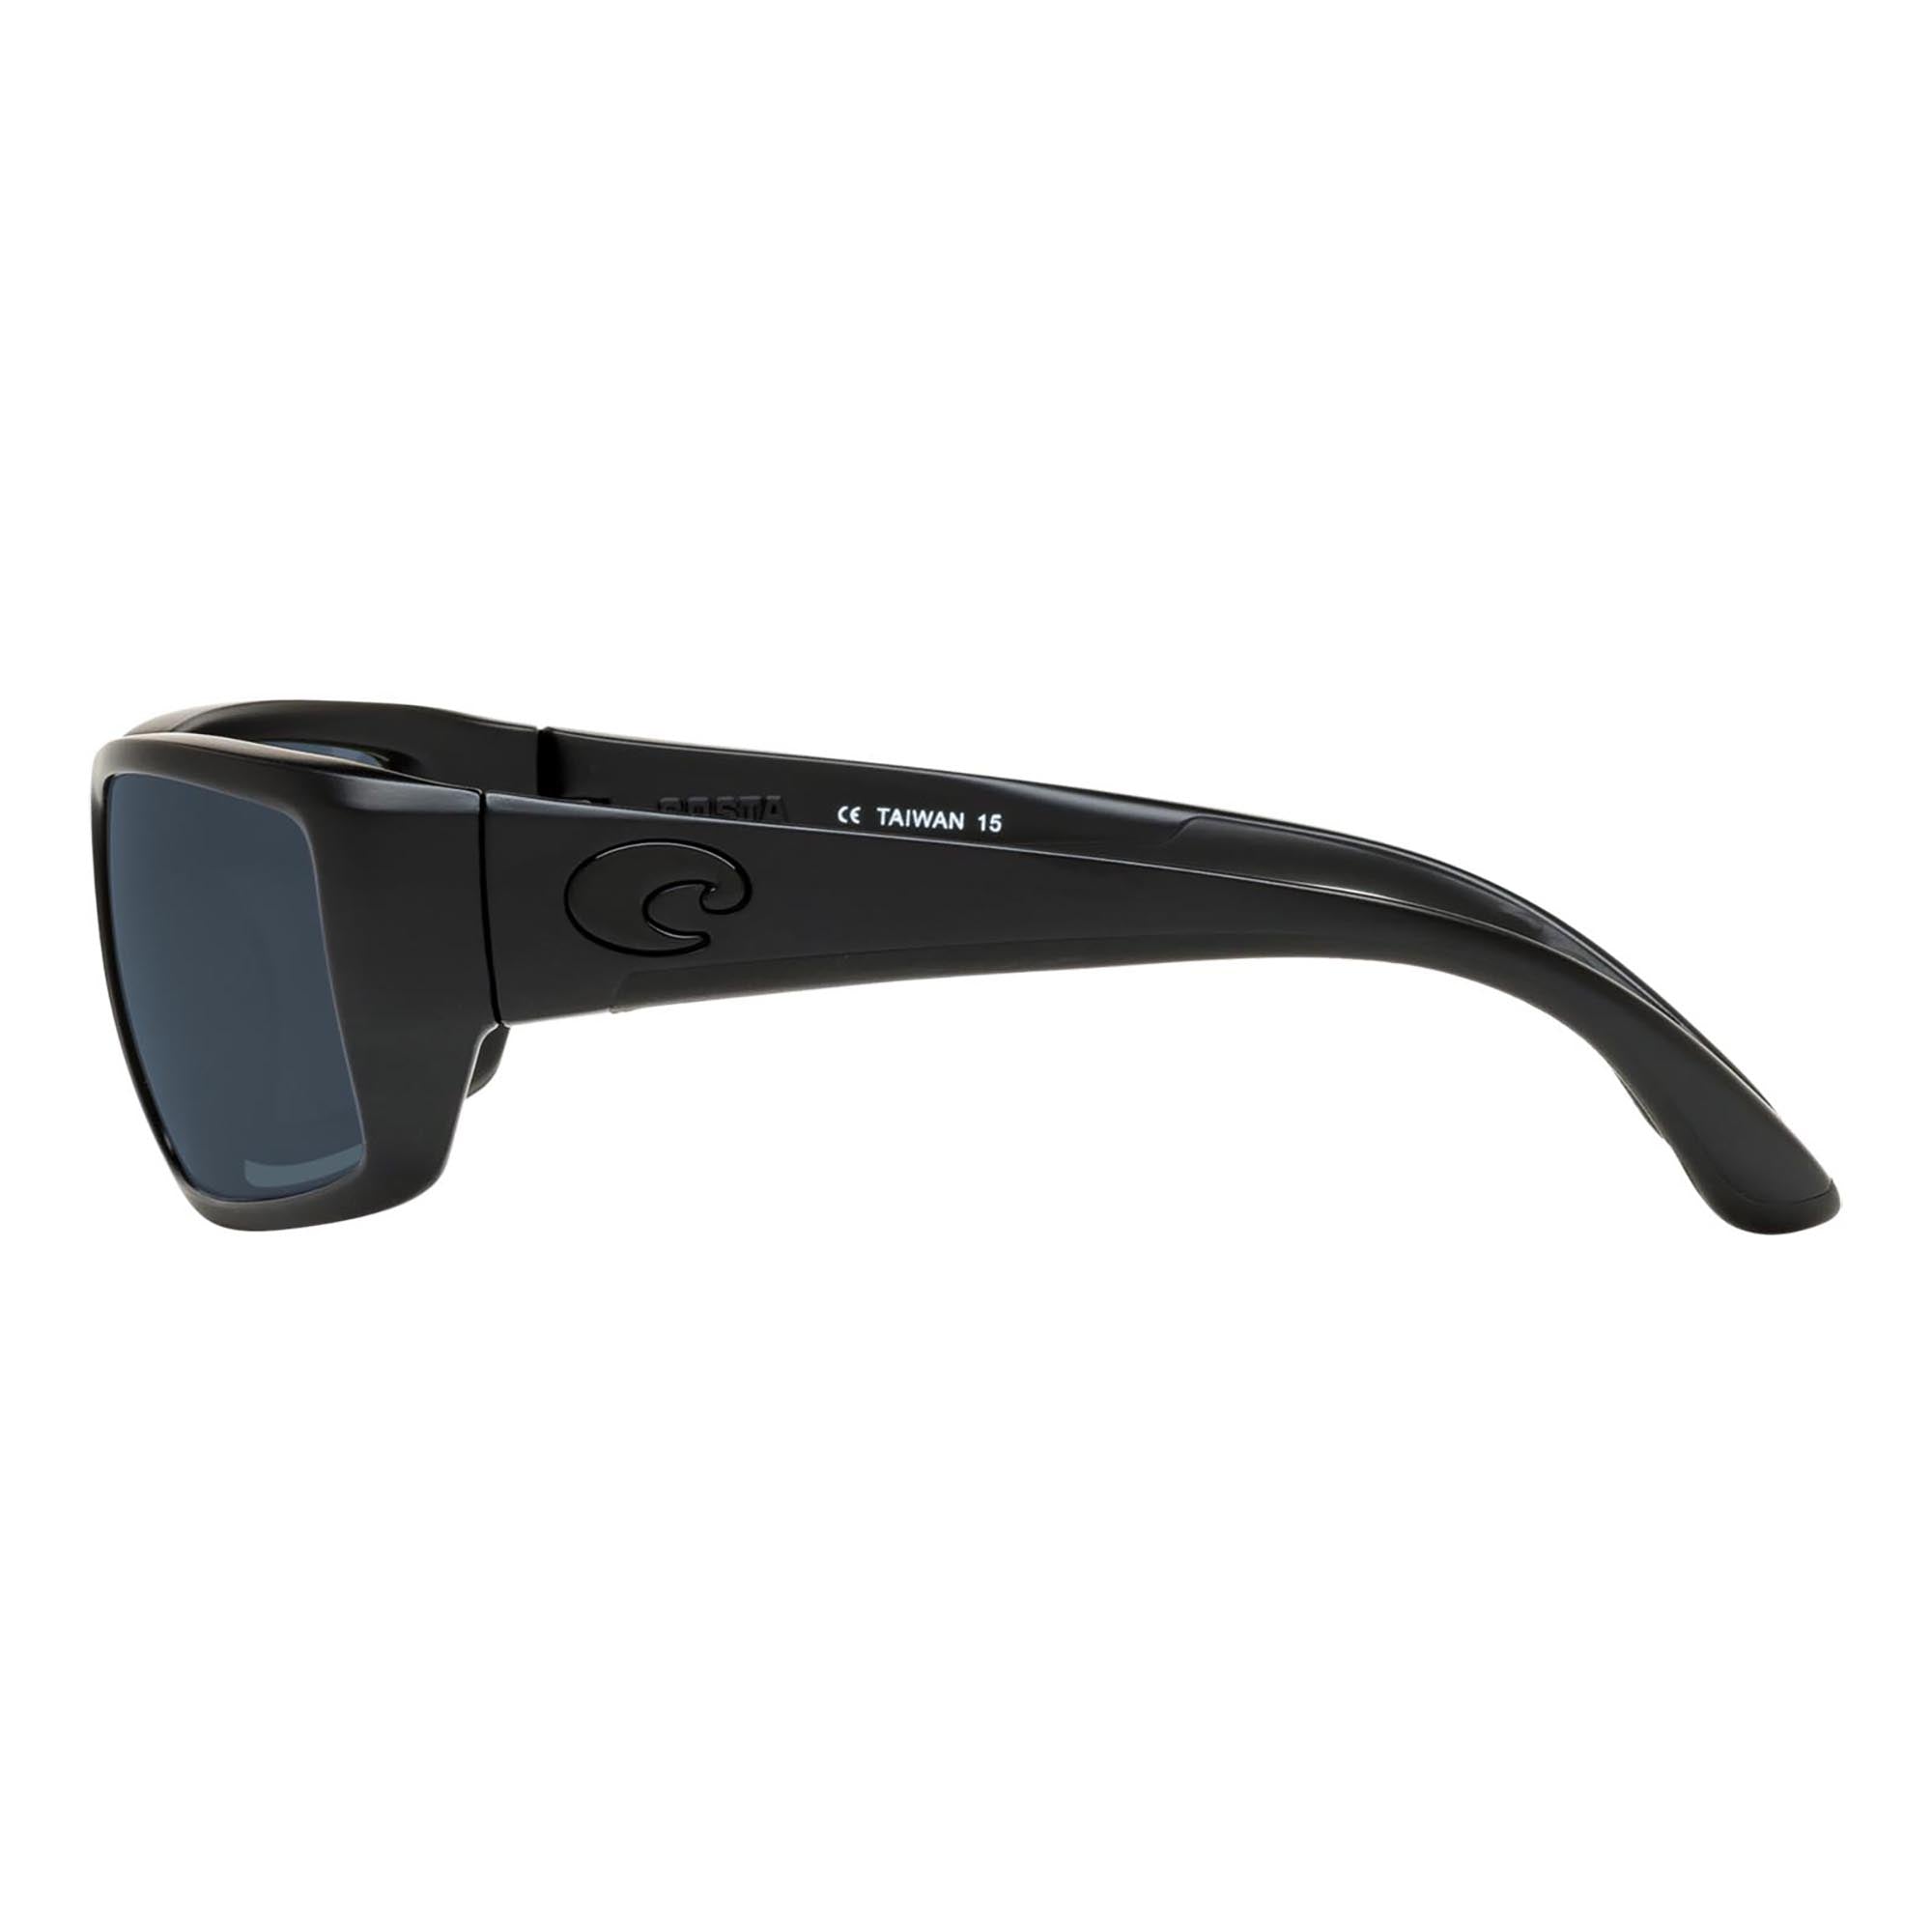 Costa Del Mar Women's Fantail Polarized Frame Sunglasses - Matte Black Frame - Green Lens